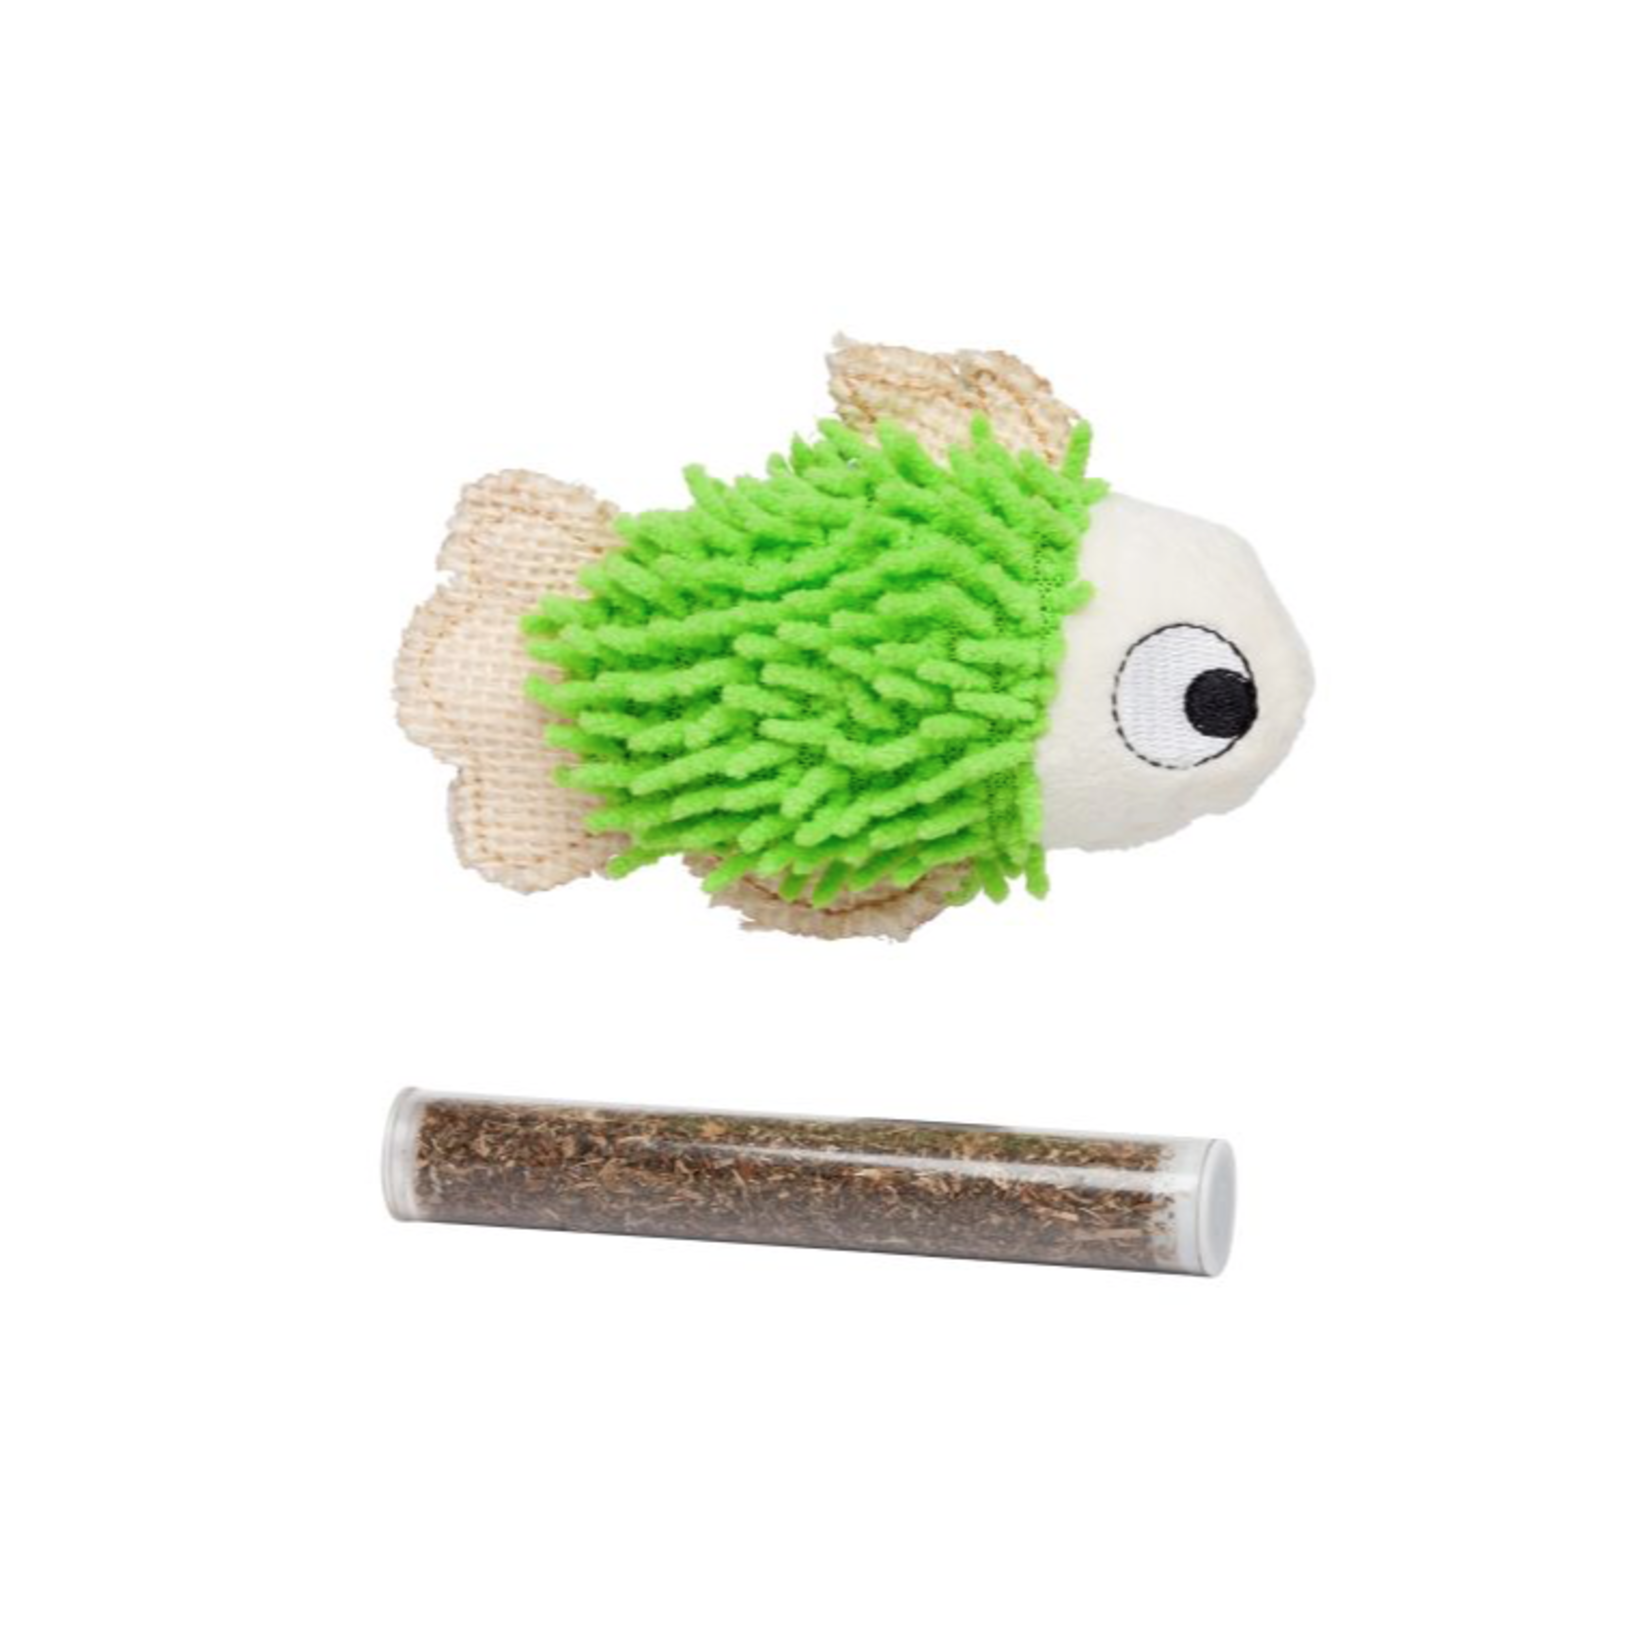 BUD-Z Bud-Z Green Fish With Catnip Pocket Cat 4.5in